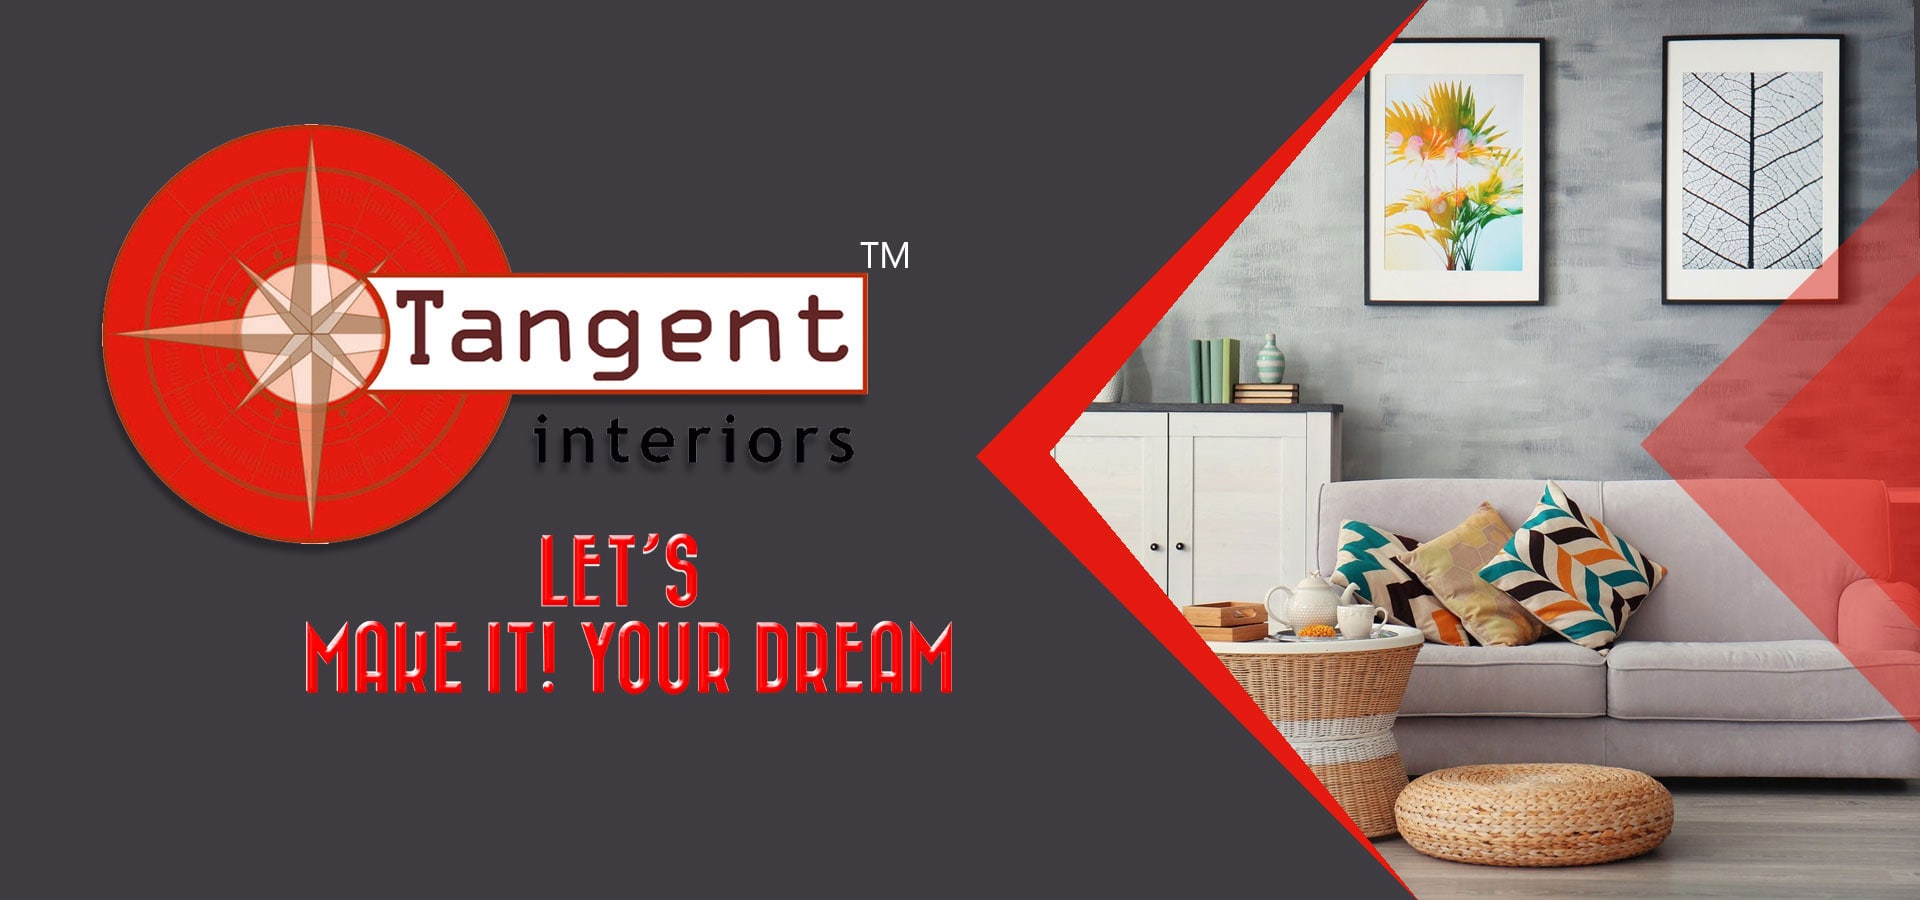 interior-designers-in-indiranagar-bangalore